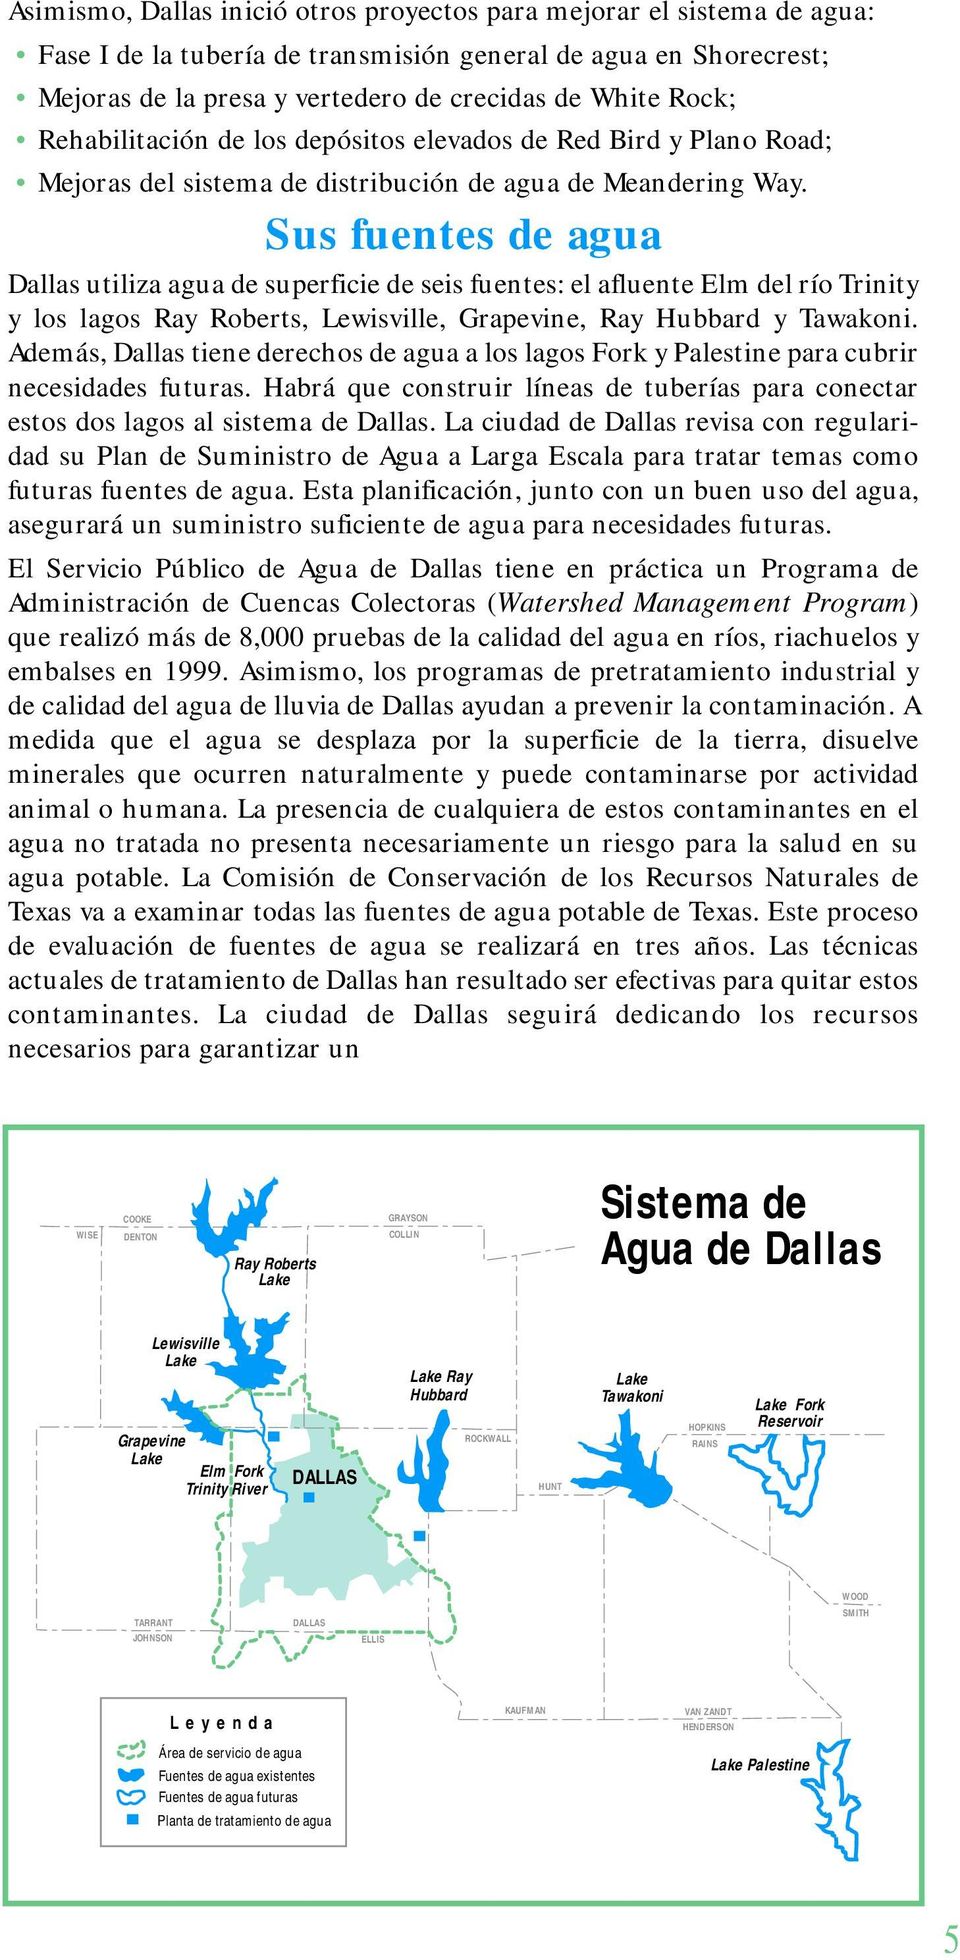 Sus fuentes de agua Dallas utiliza agua de superficie de seis fuentes: el afluente Elm del río Trinity y los lagos Ray Roberts, Lewisville, Grapevine, Ray Hubbard y Tawakoni.